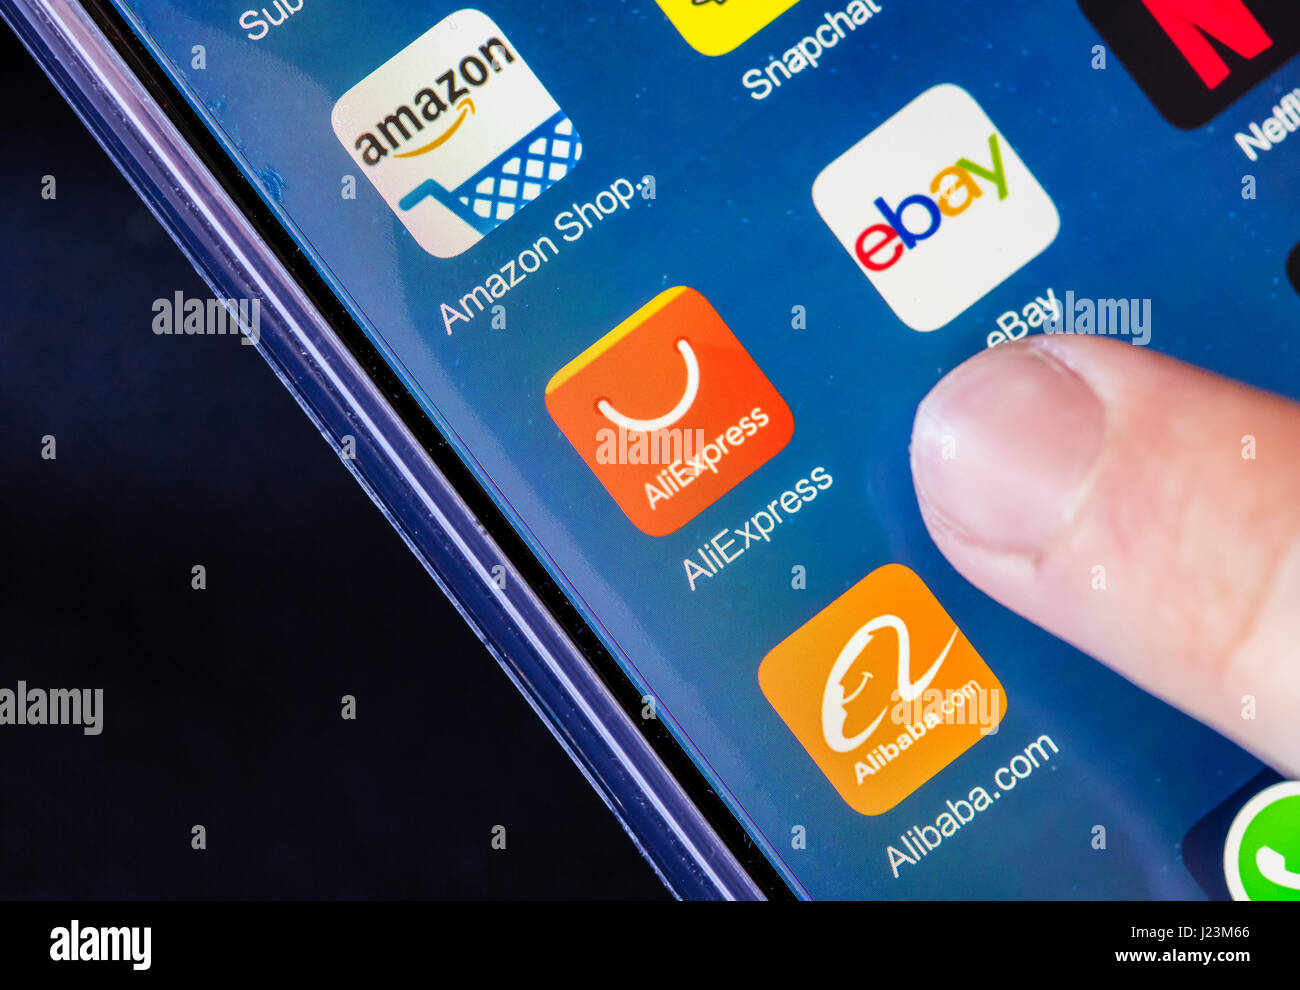 Zurich, Svizzera - 19 Febbraio 2017: le icone di AliExpress, Alibaba.com, Ebay e Amazon shopping online applicazioni su uno smartphone touchscreen. Foto Stock